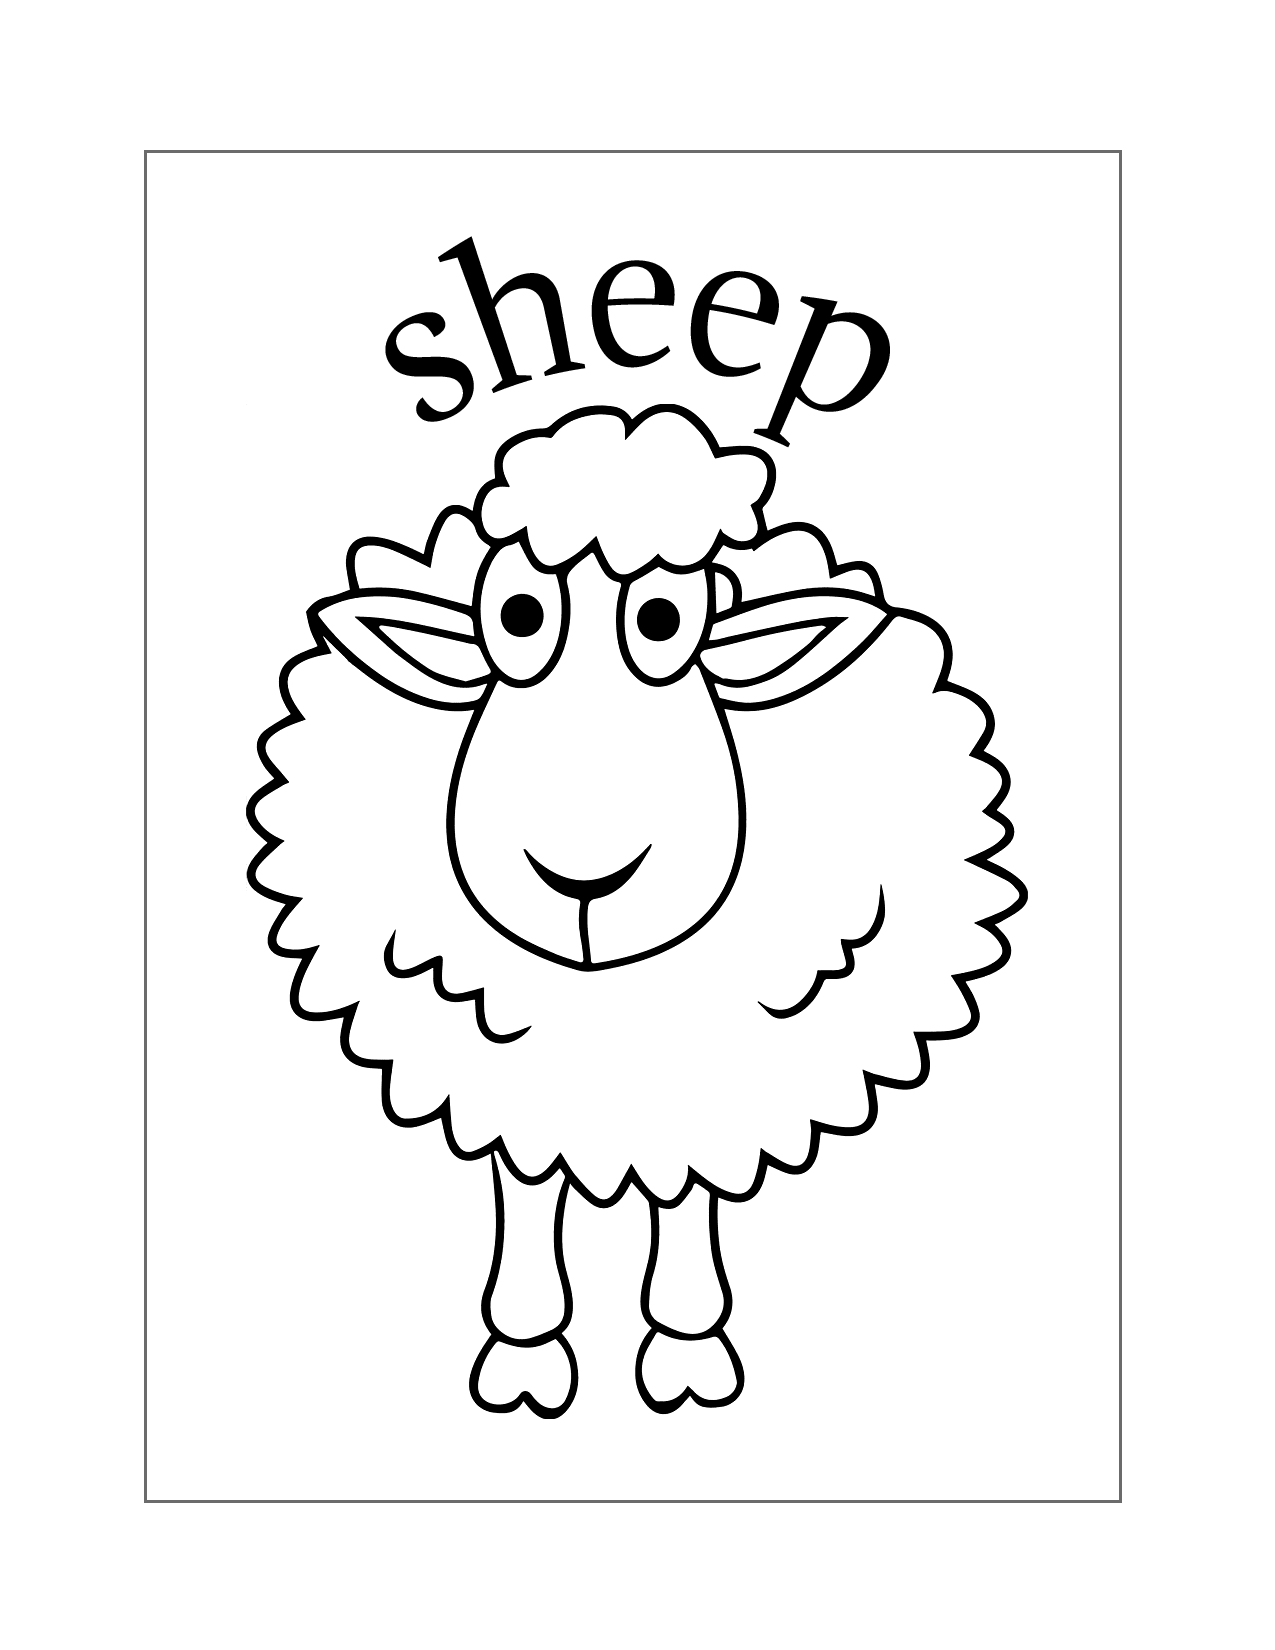 Zany Sheep Coloring Page